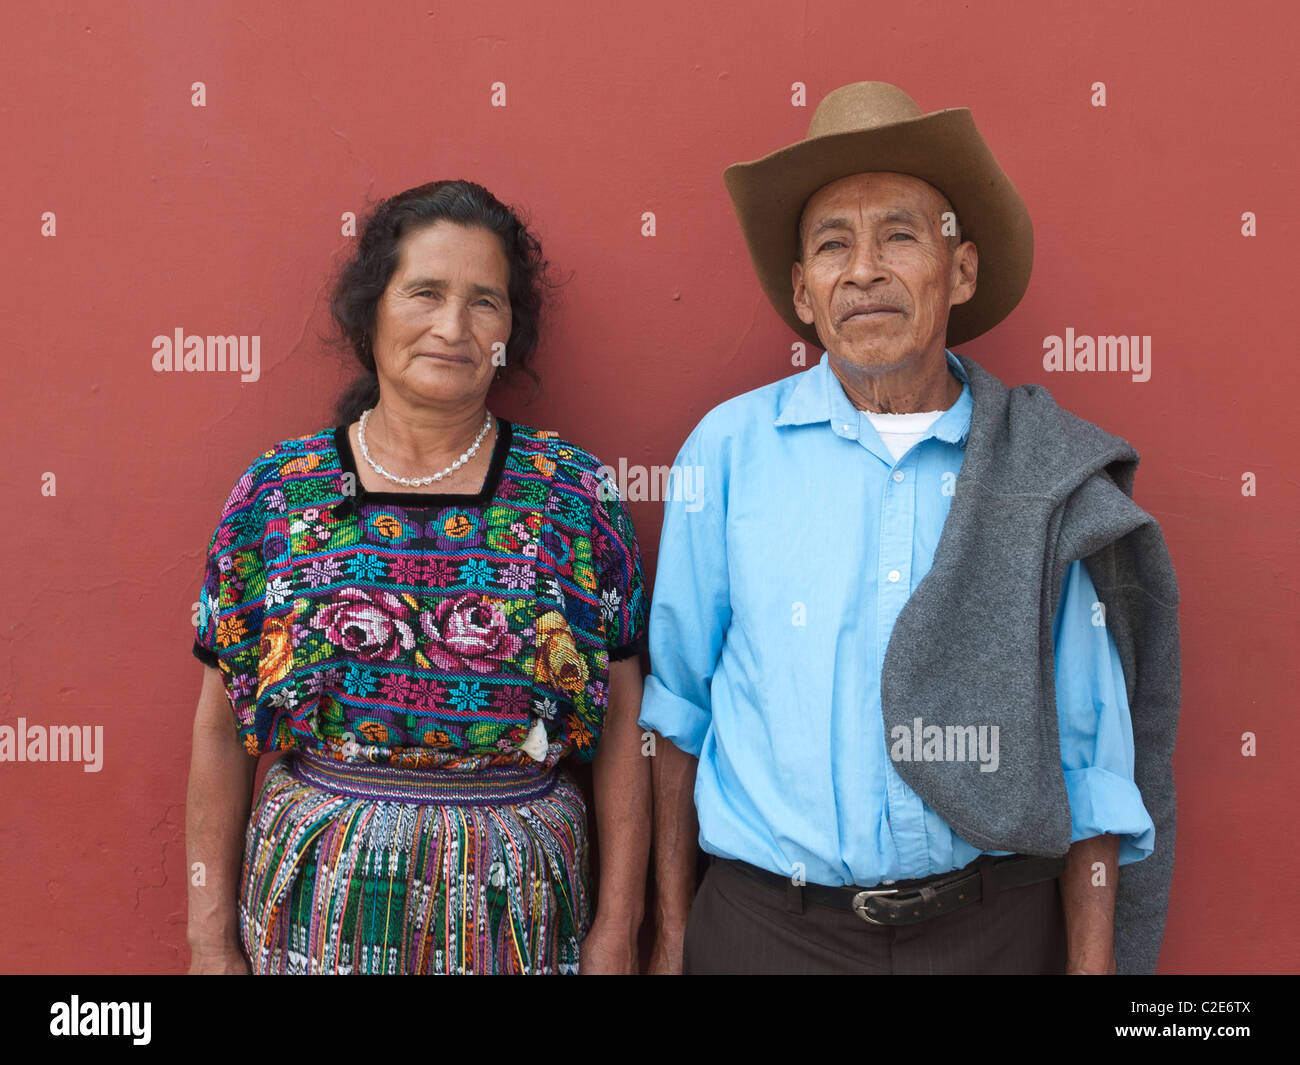 Un vieux couple marié guatémaltèque se tenir en face d'un mur de couleur terre cuite profonde en costume traditionnel à l'avant. Banque D'Images